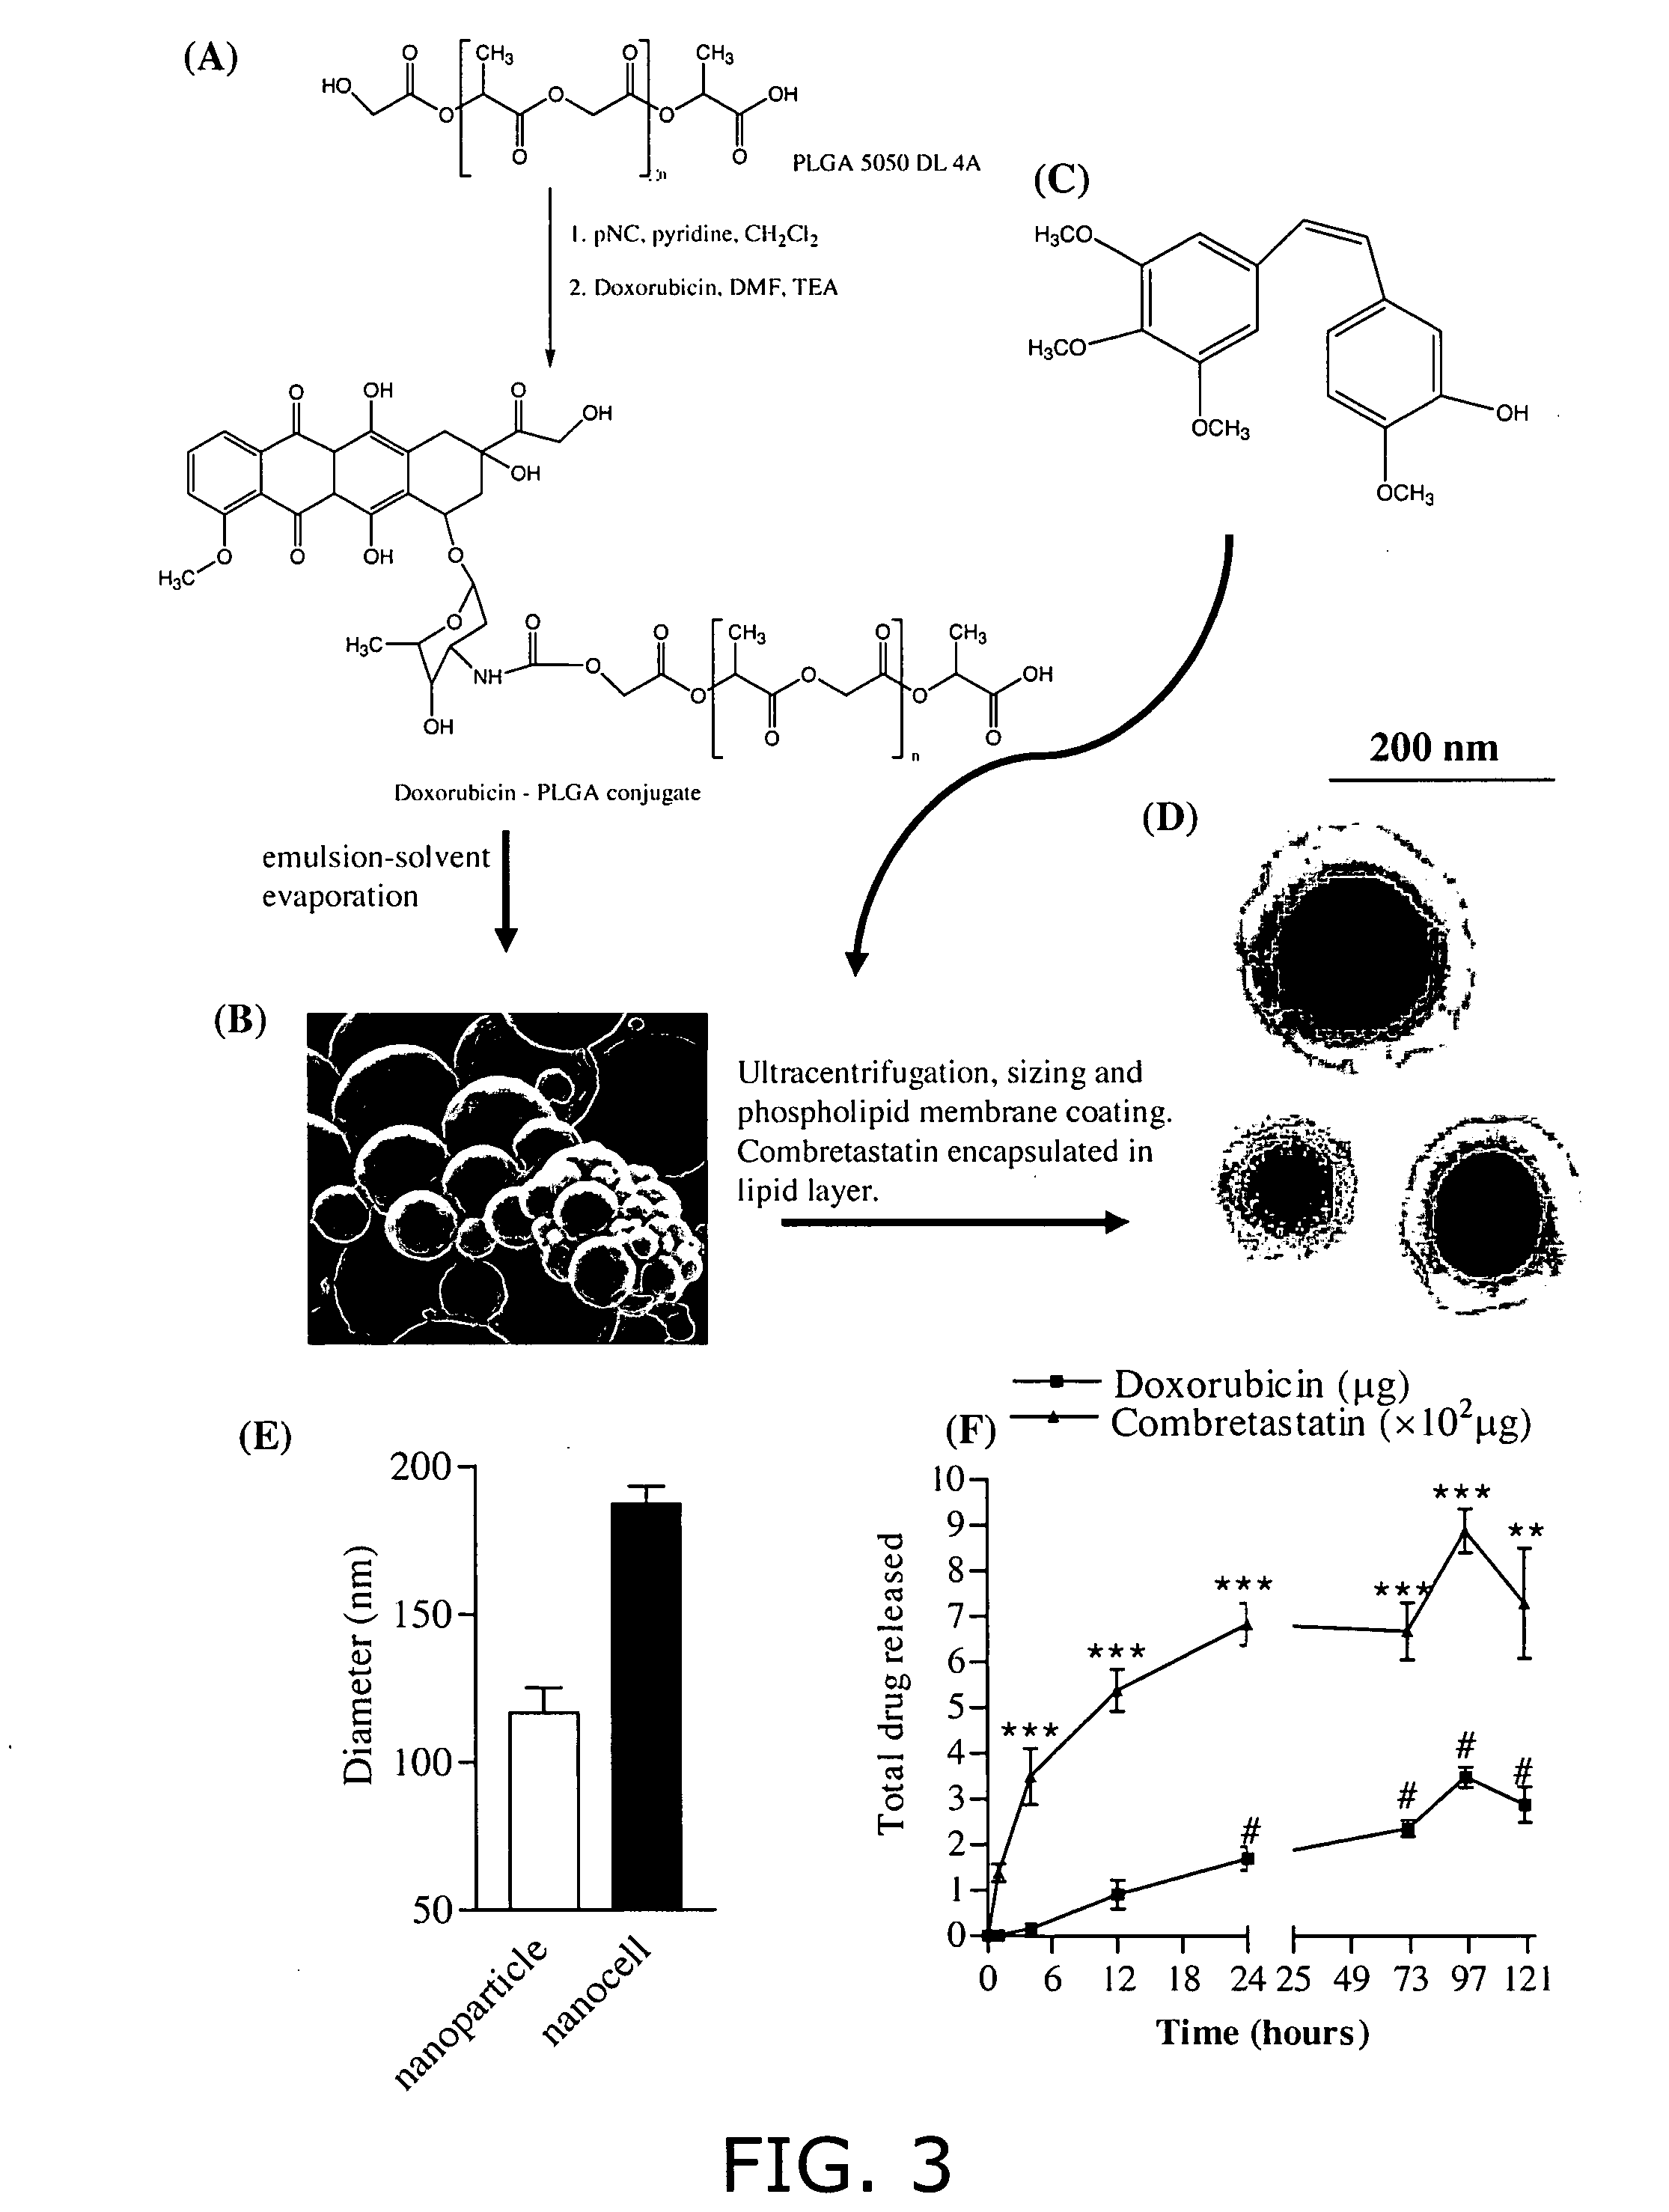 Nanocell drug delivery system